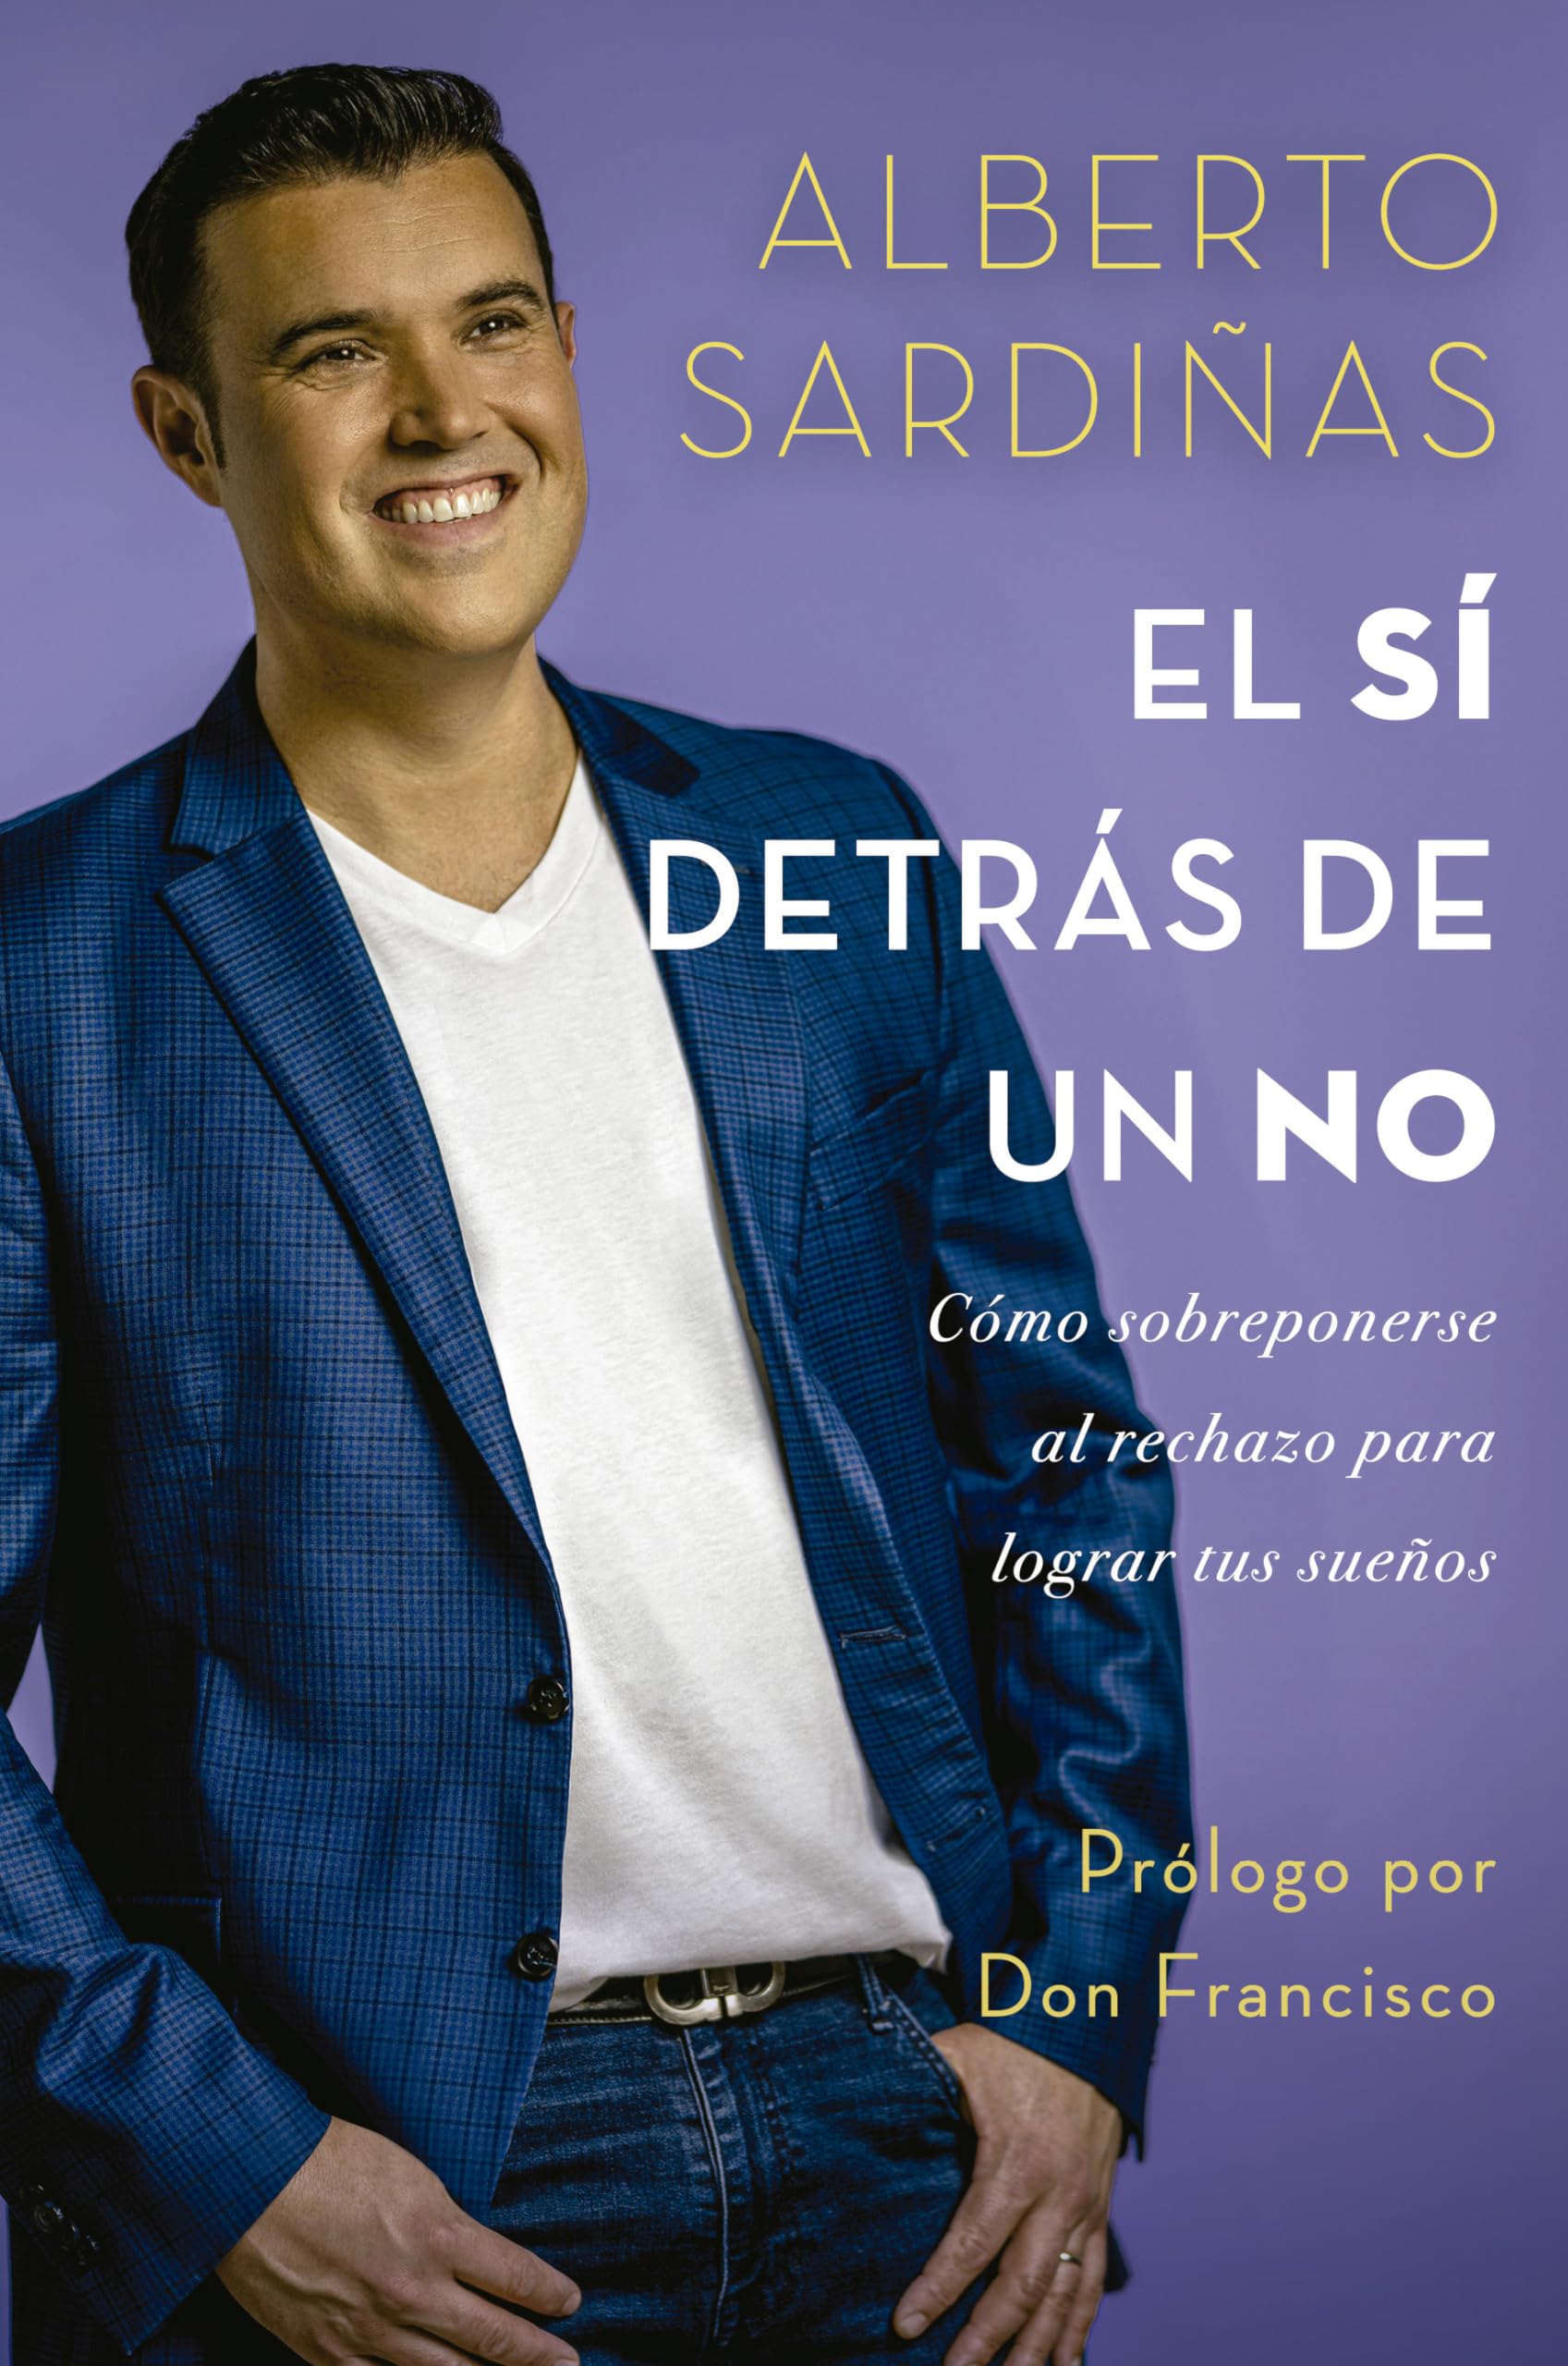 El sí detrás de un no: Cómo sobreponerse al rechazo para lograr tus sueños (Spanish Edition)